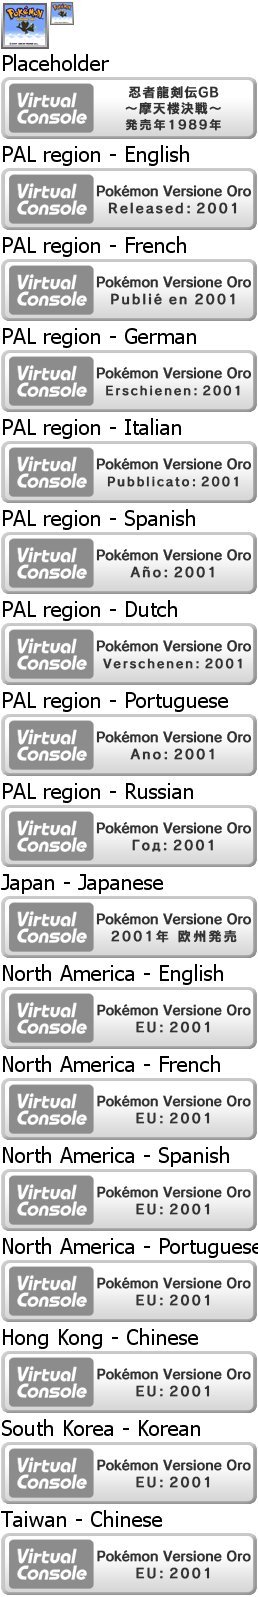 Virtual Console - Pokémon Versione Oro